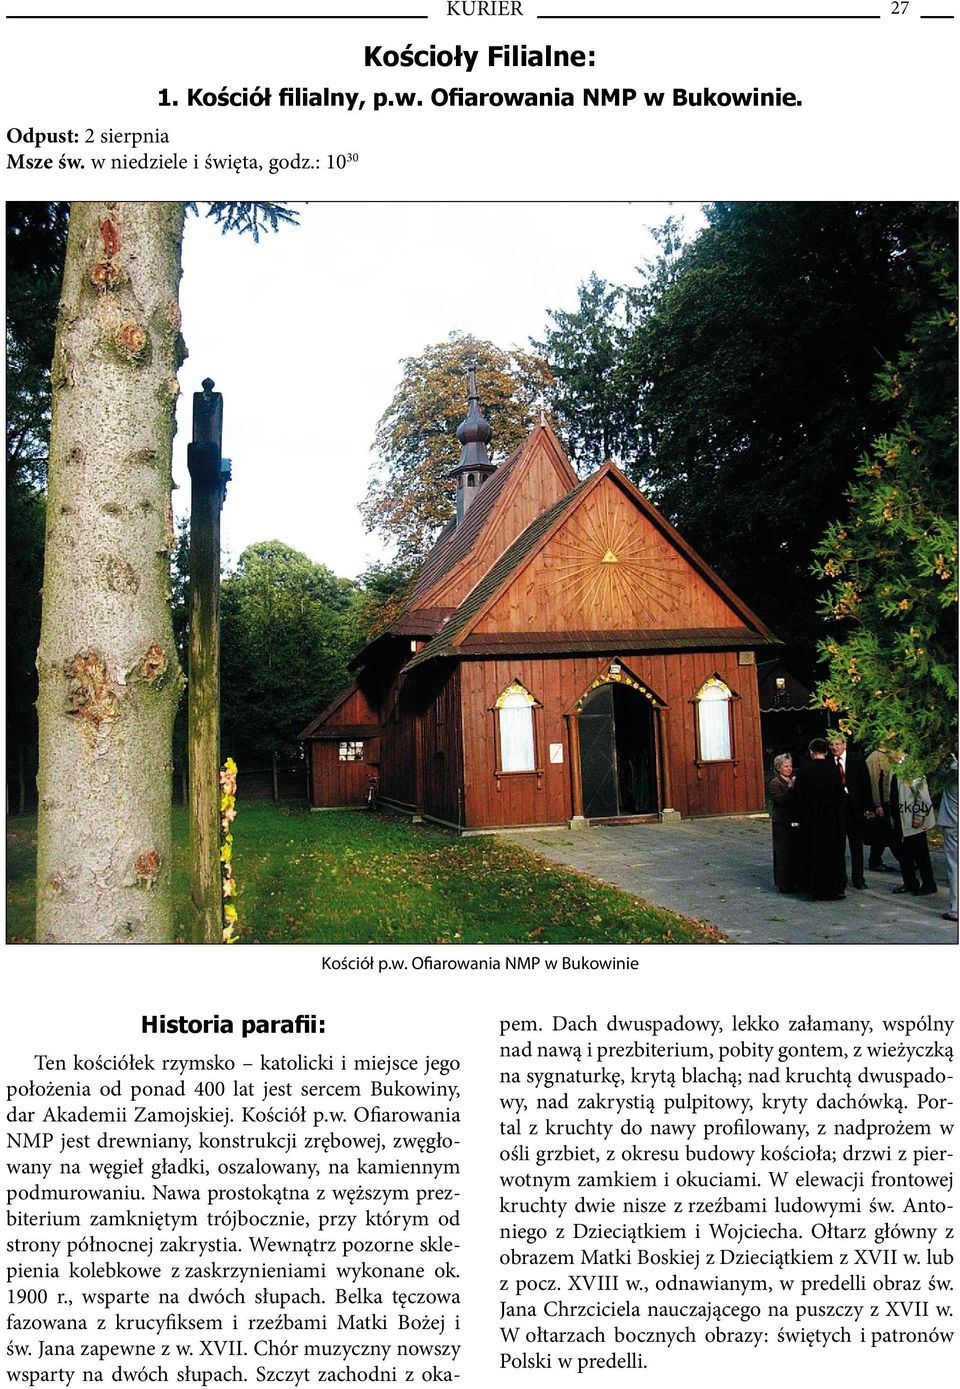 Kościół p.w. Ofiarowania NMP jest drewniany, konstrukcji zrębowej, zwęgłowany na węgieł gładki, oszalowany, na kamiennym podmurowaniu.